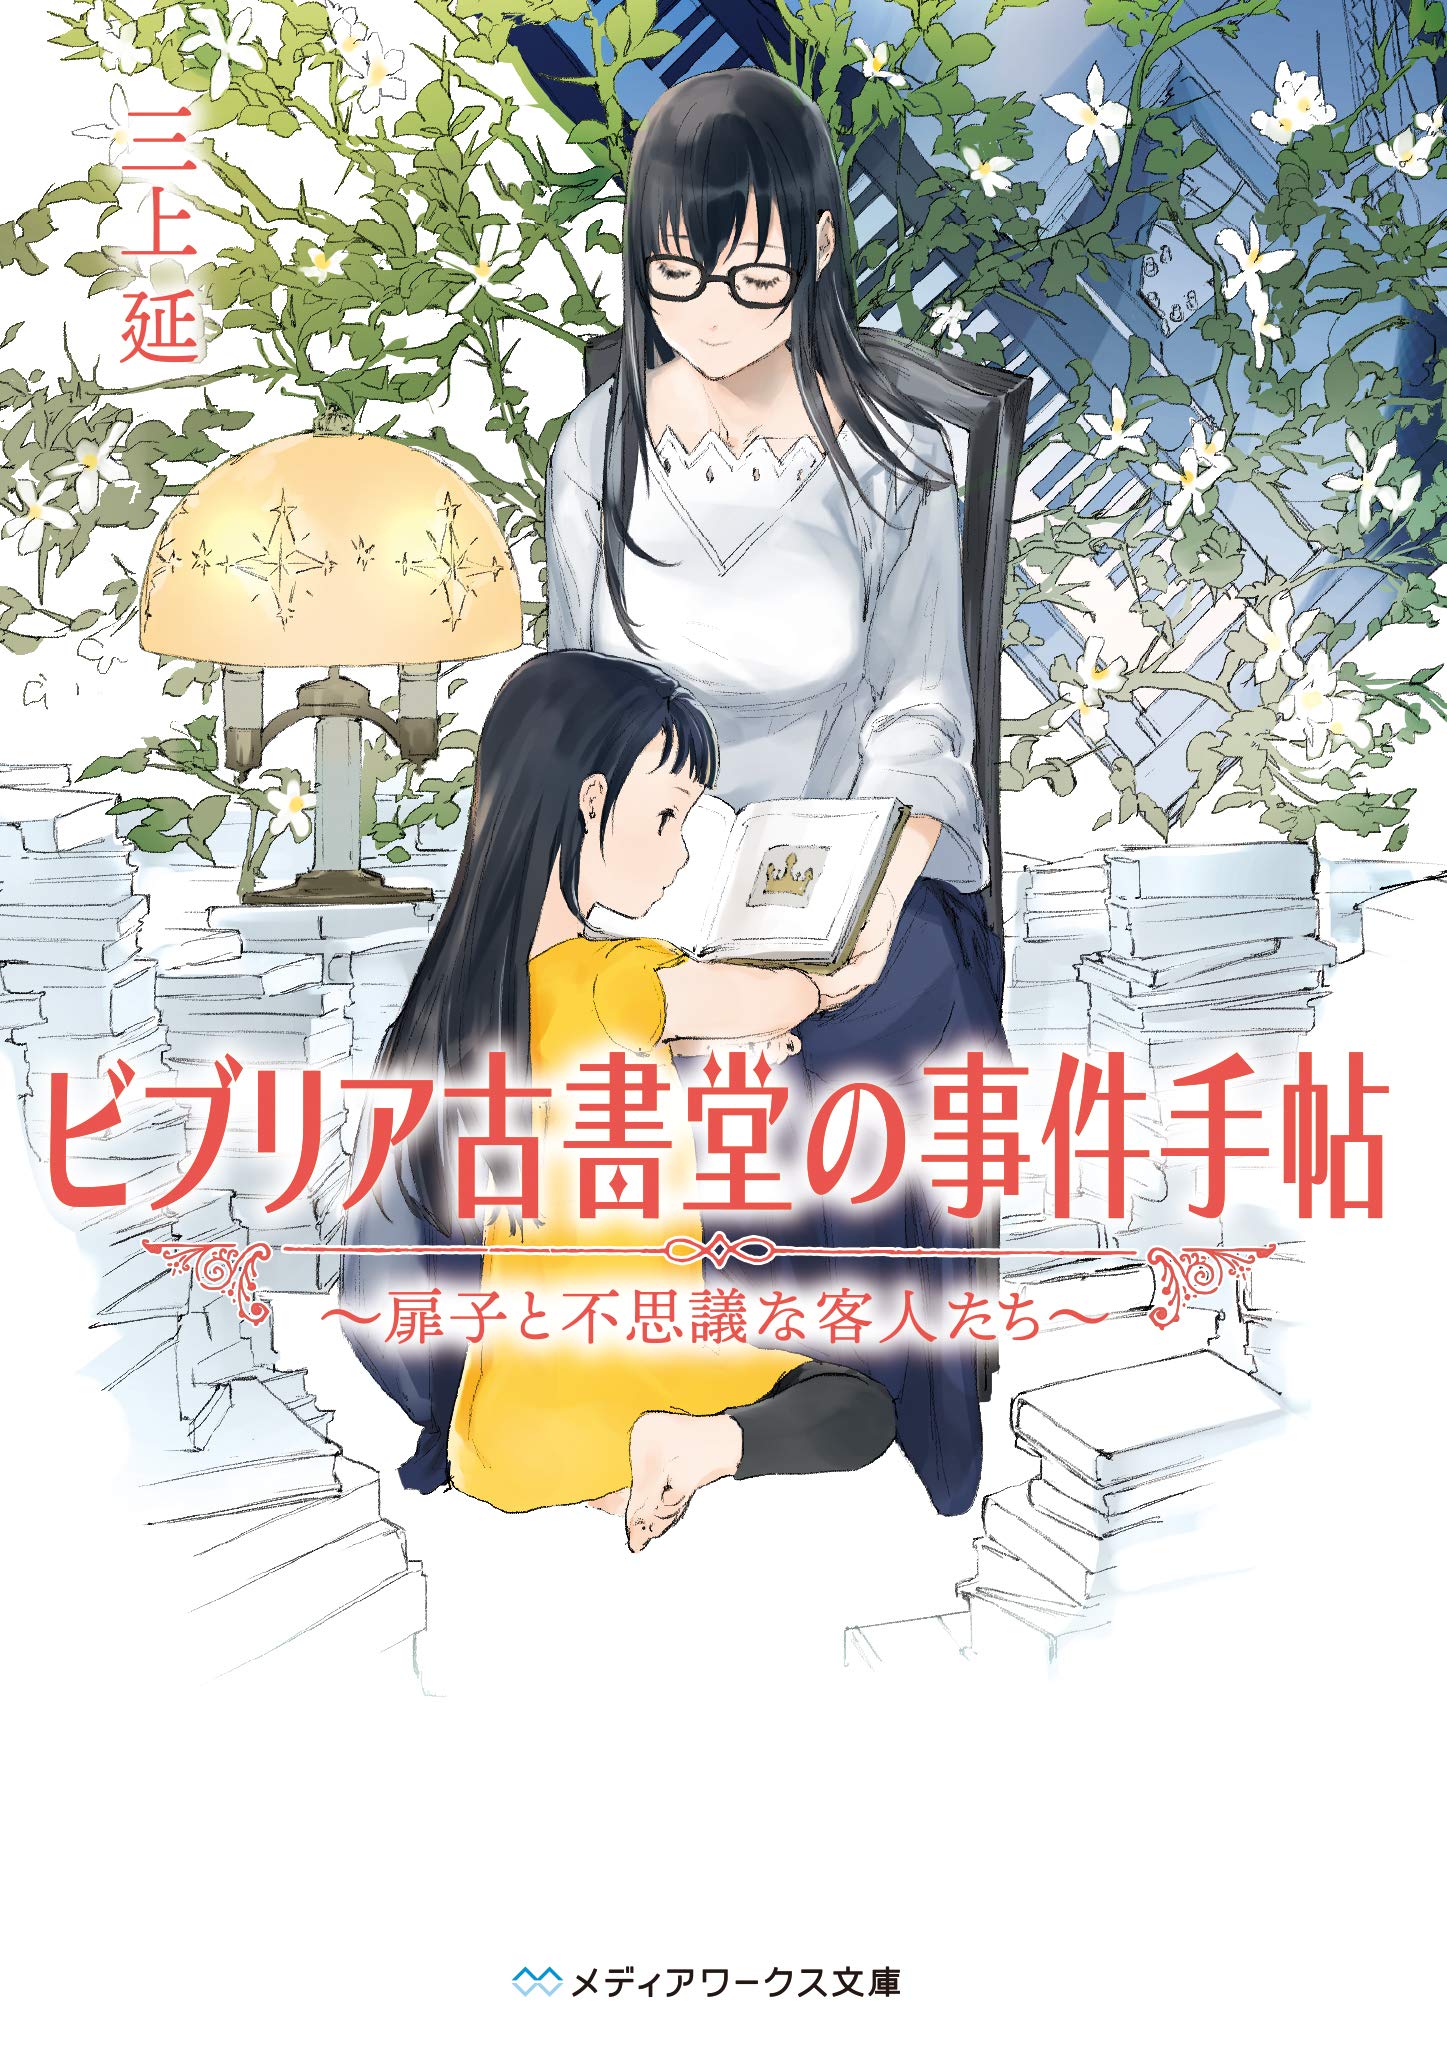 Manga Spin-Off Volume 1, Kage no Jitsuryokusha ni Naritakute! Wiki